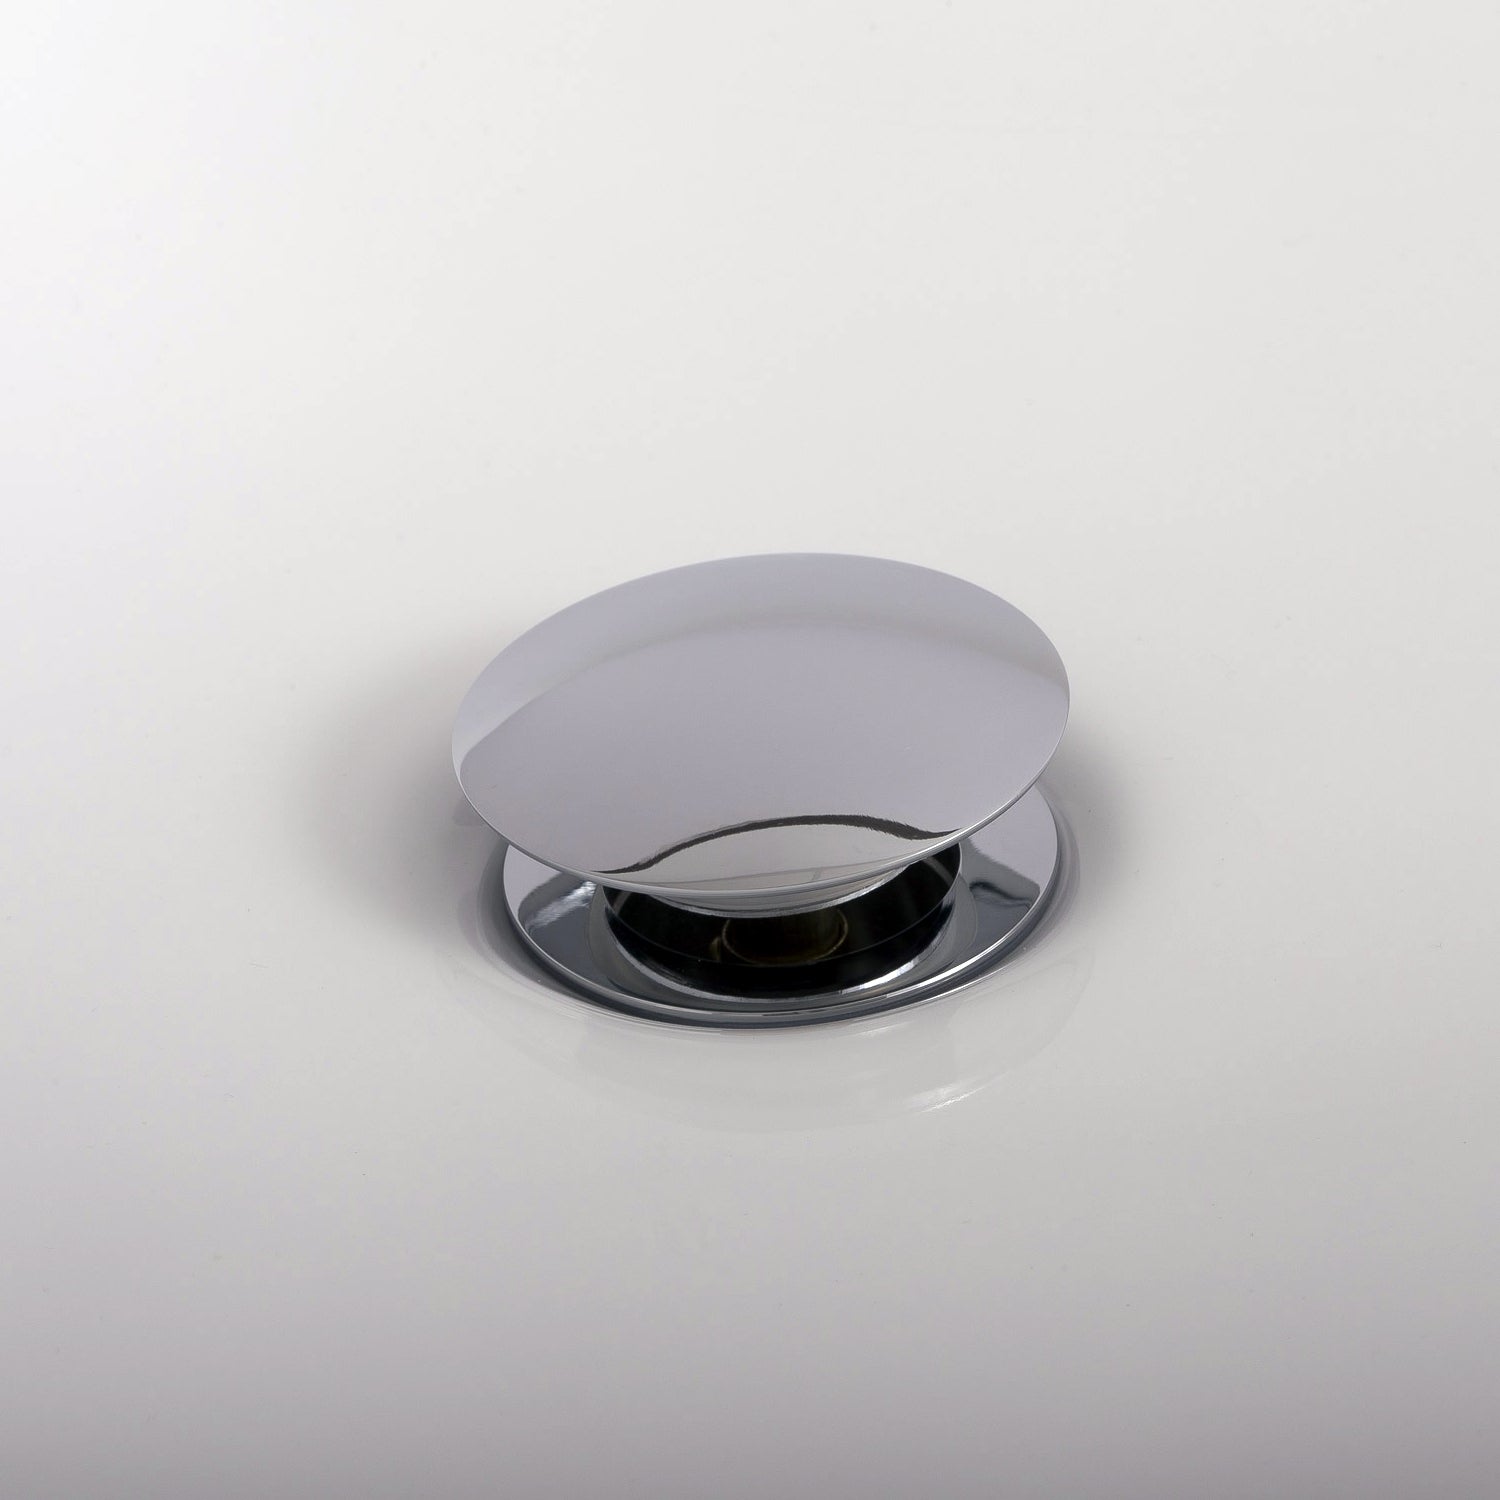 DAX Round Vanity Sink Pop up Drain, Brass Body, 2-5/8 x 8-5/8 Inches (DAX-82005)